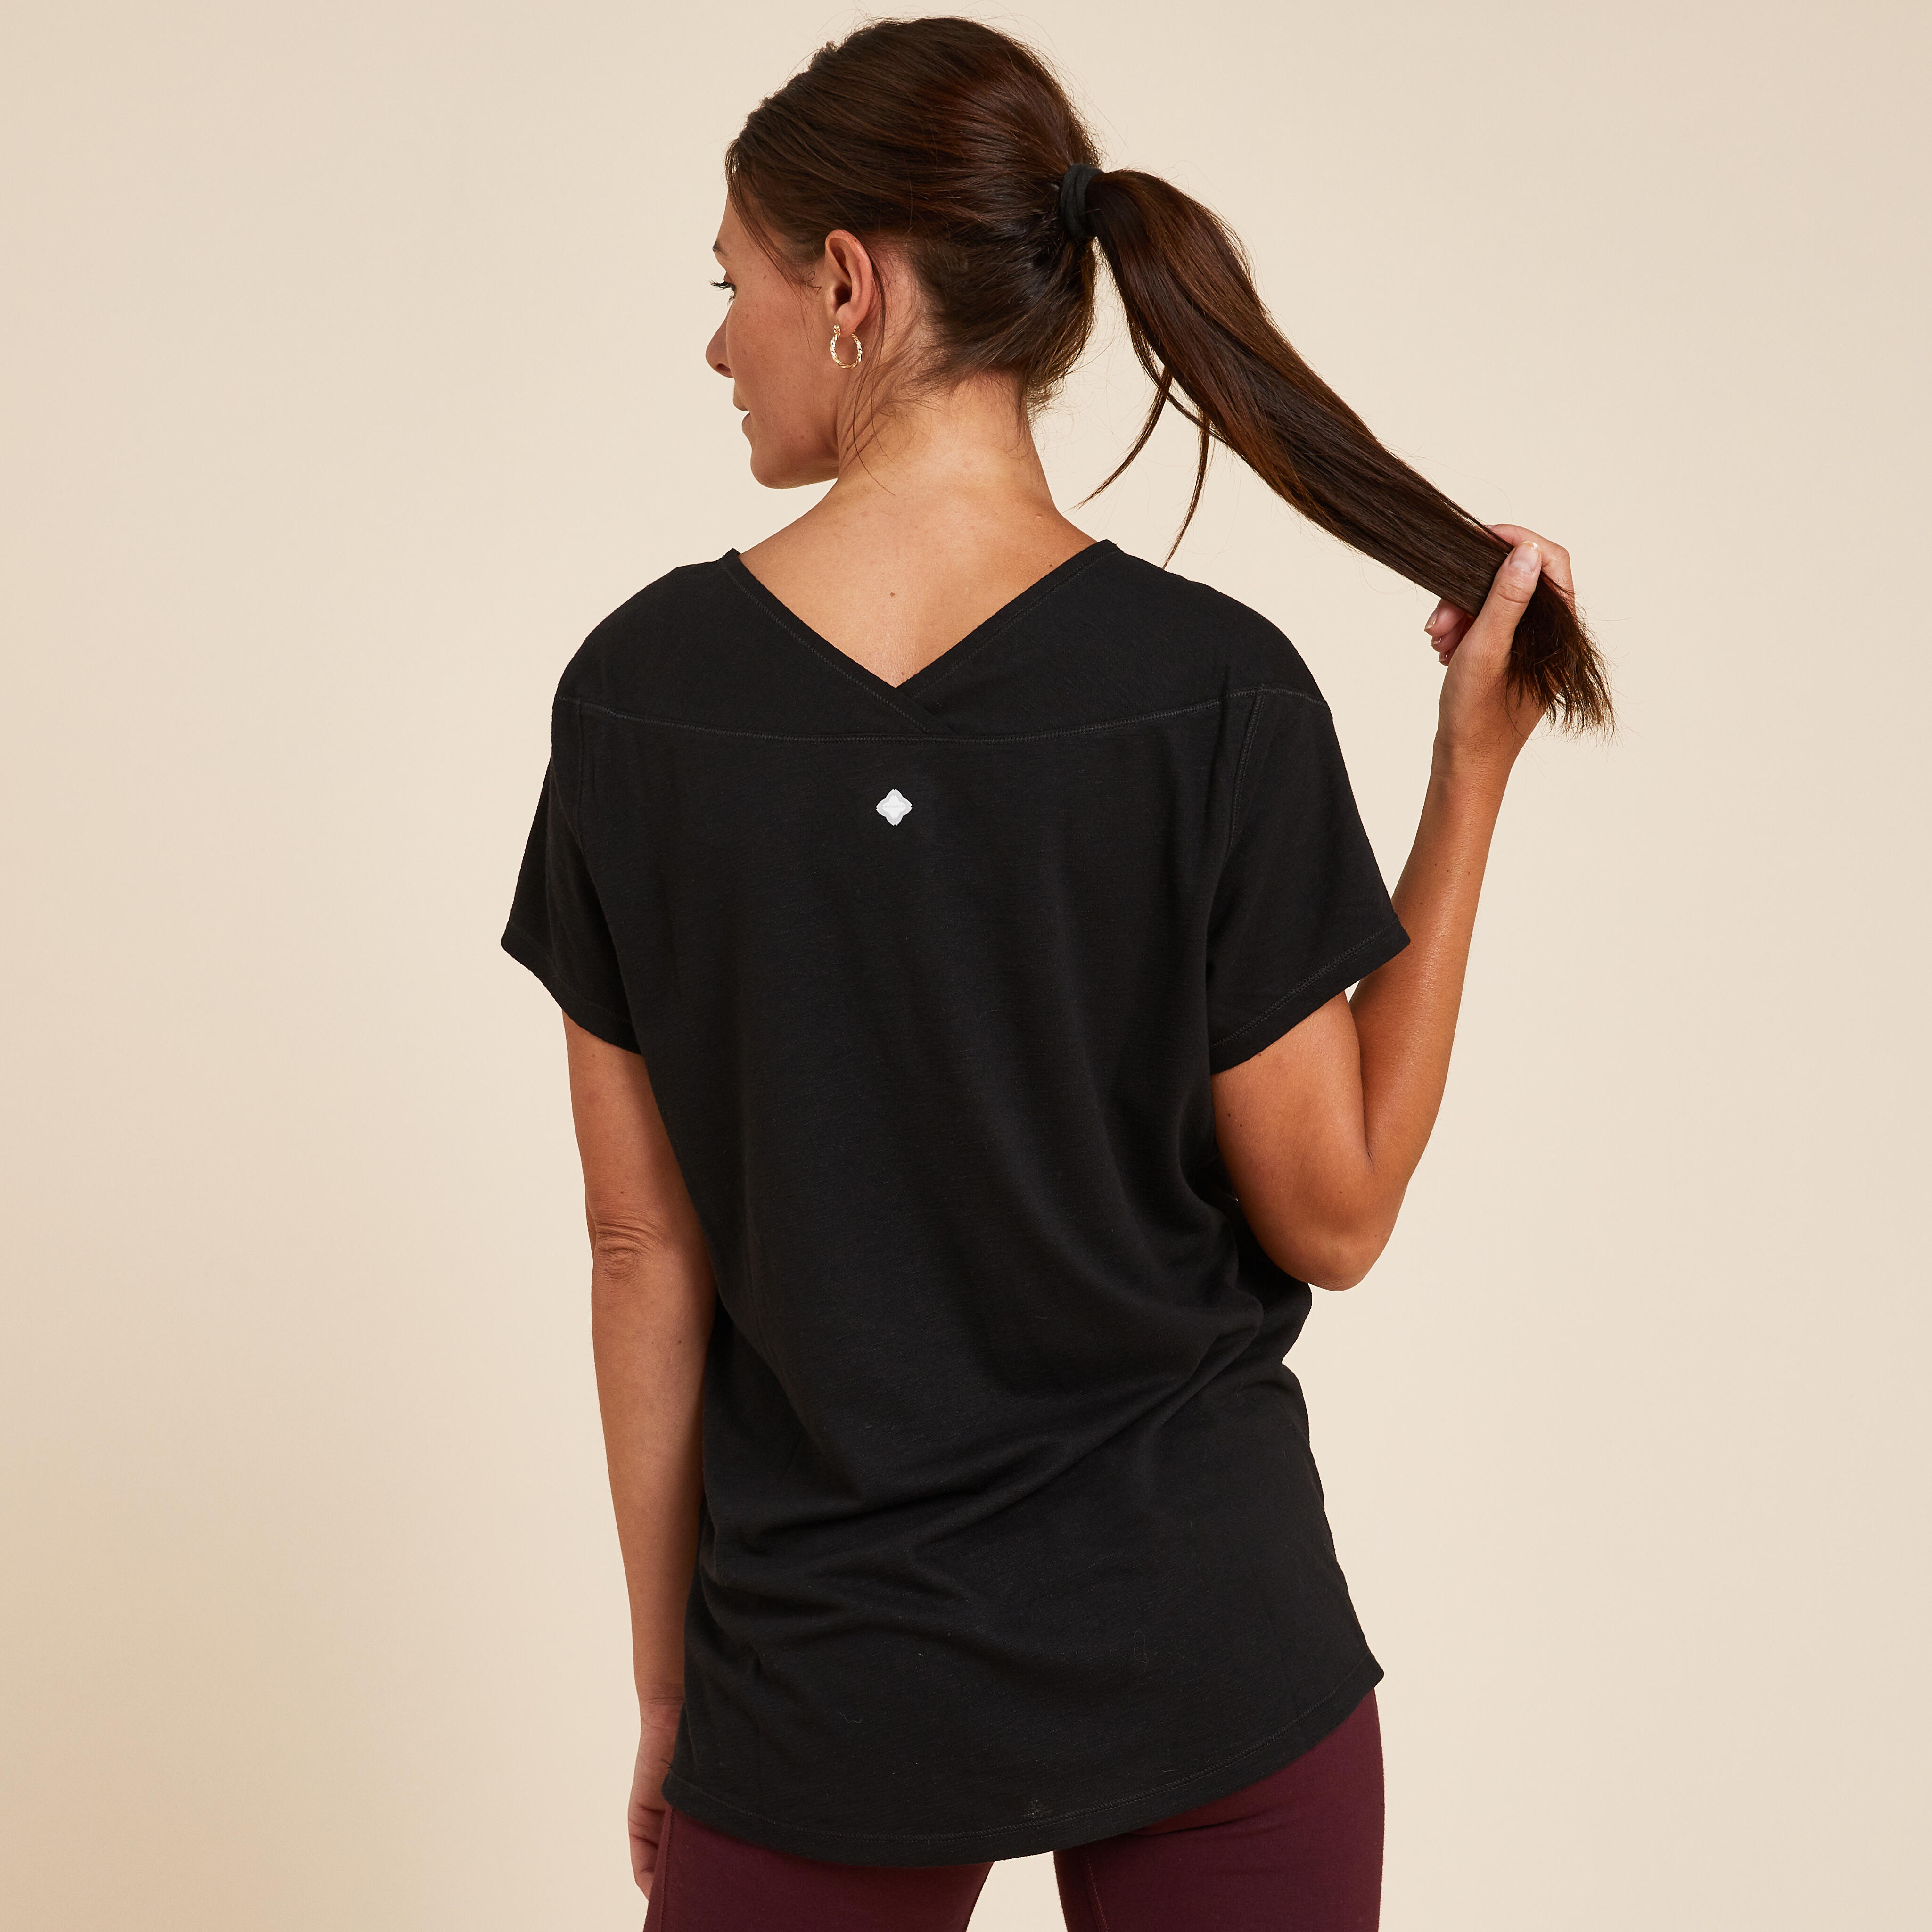 Women’s Yoga T-Shirt - Black - KIMJALY